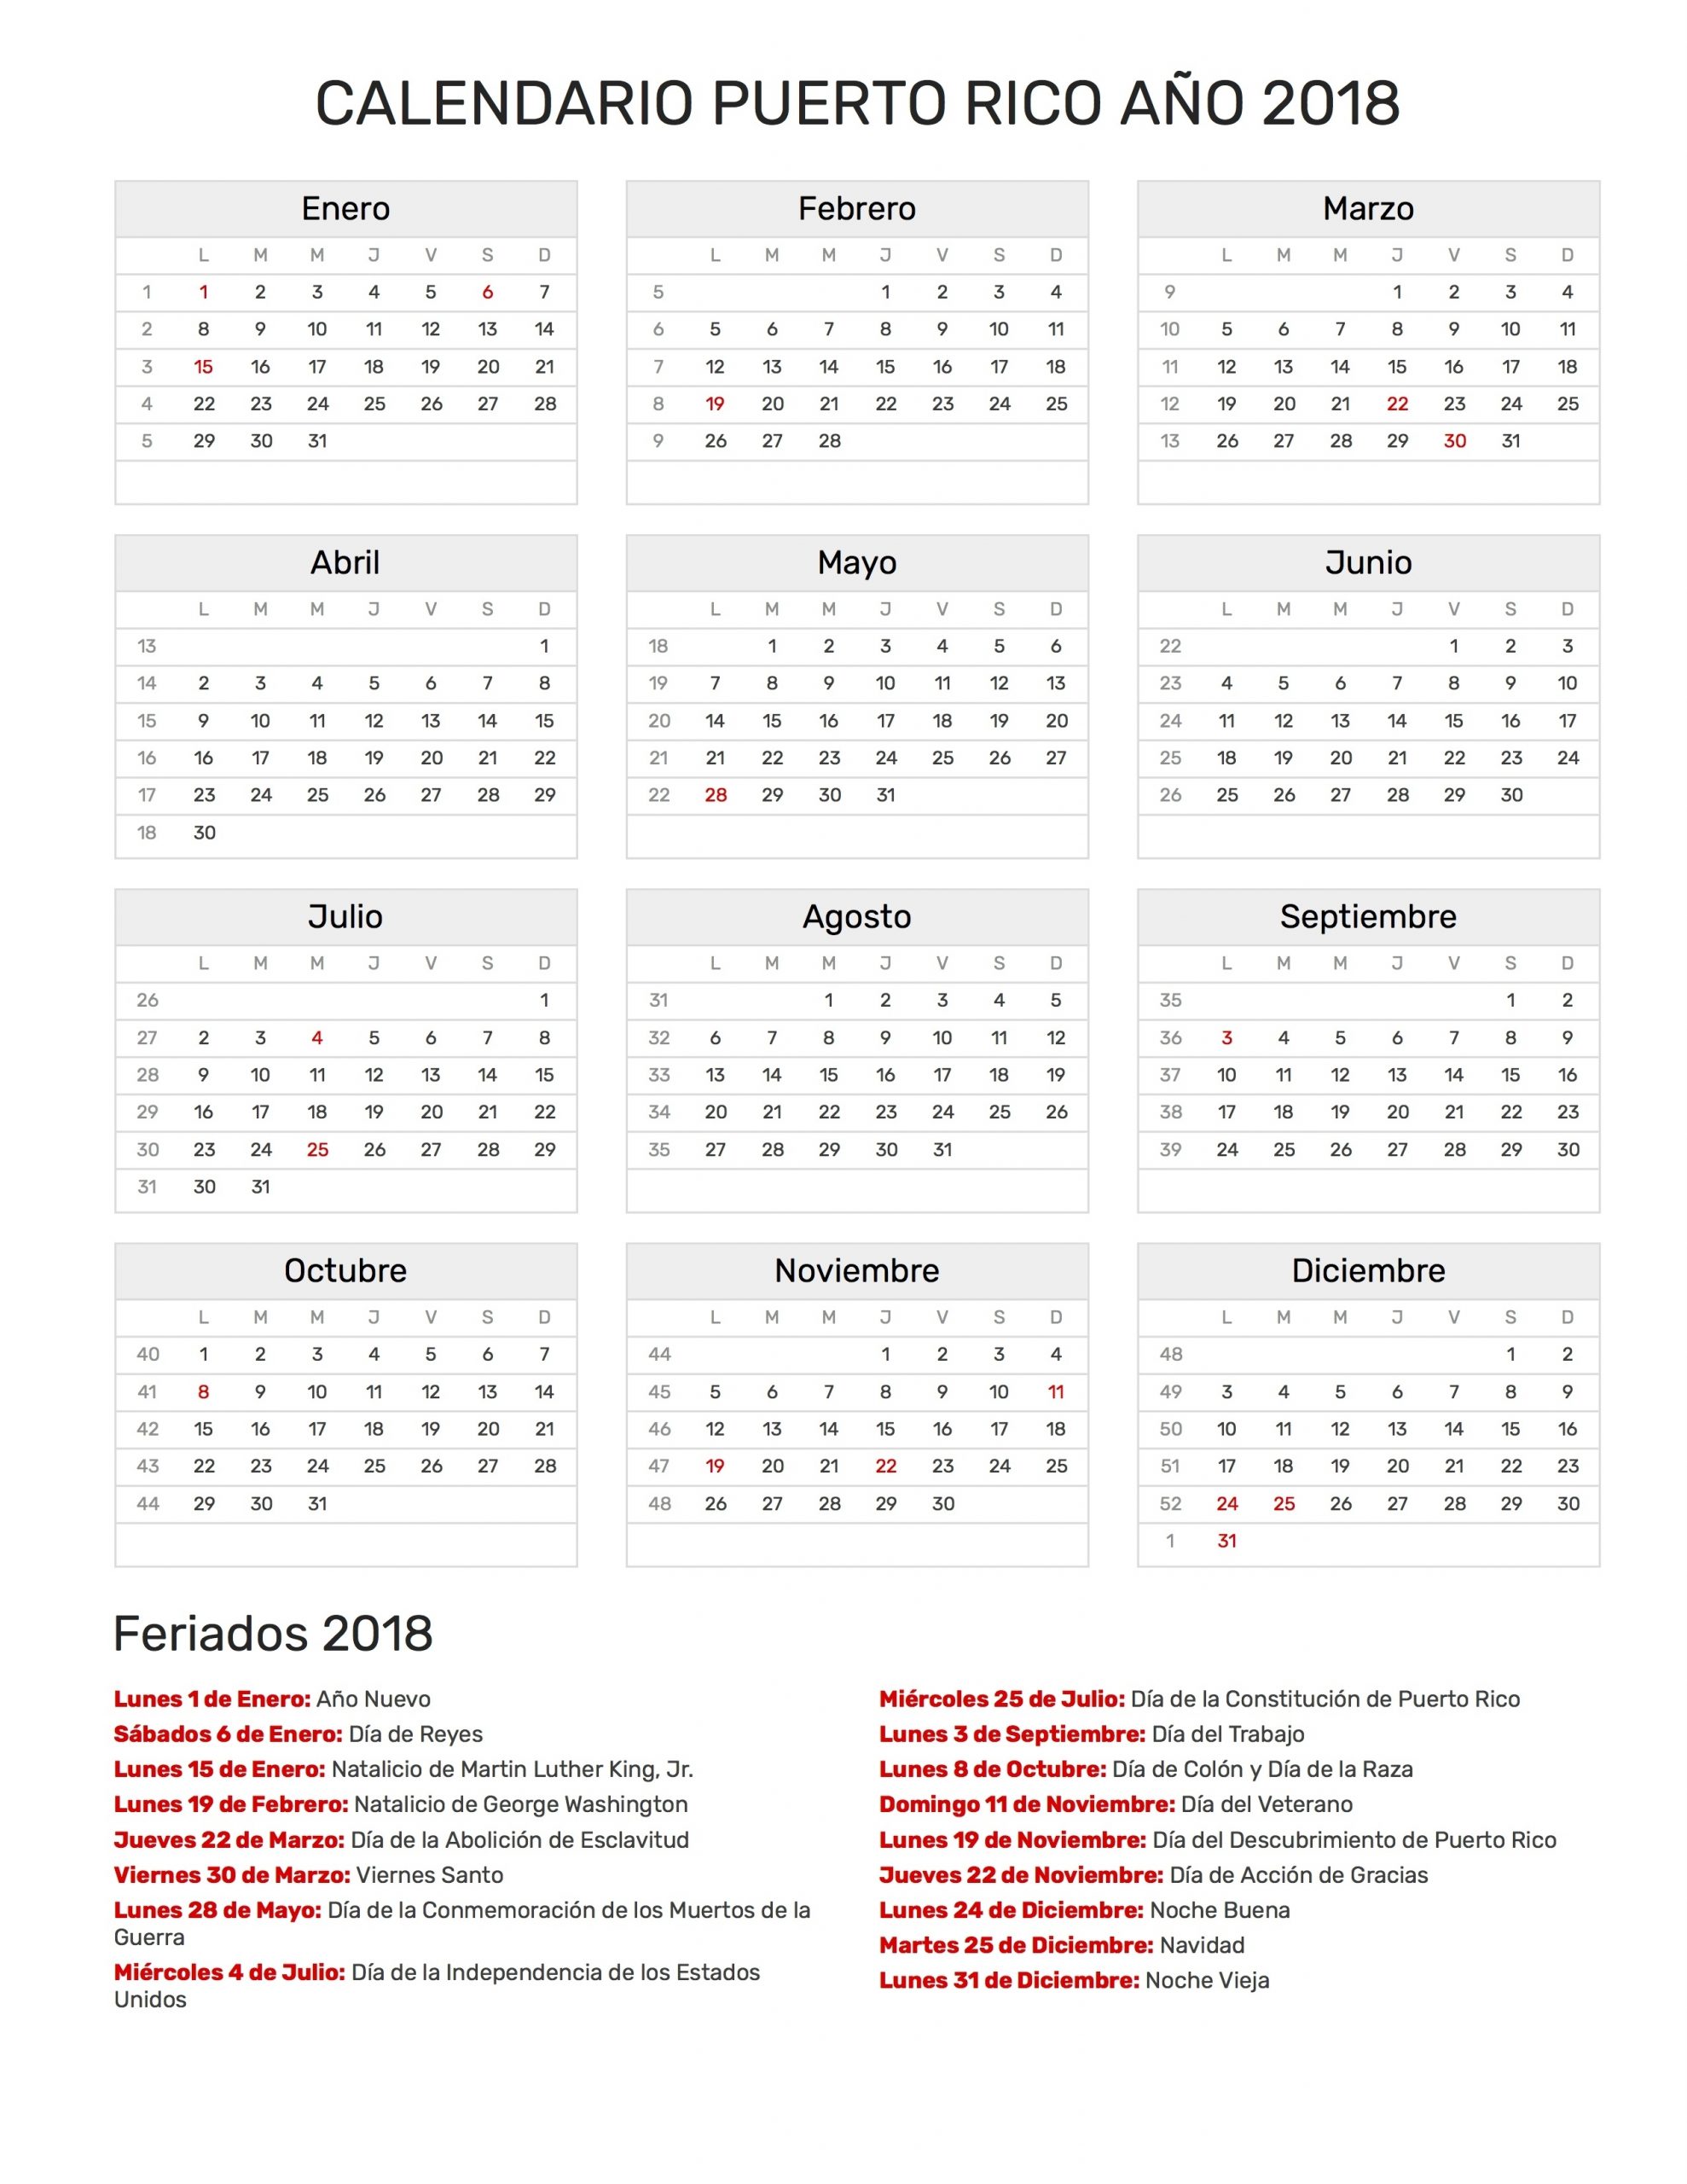 Calendario De Puerto Rico Año 2018 | Feriados